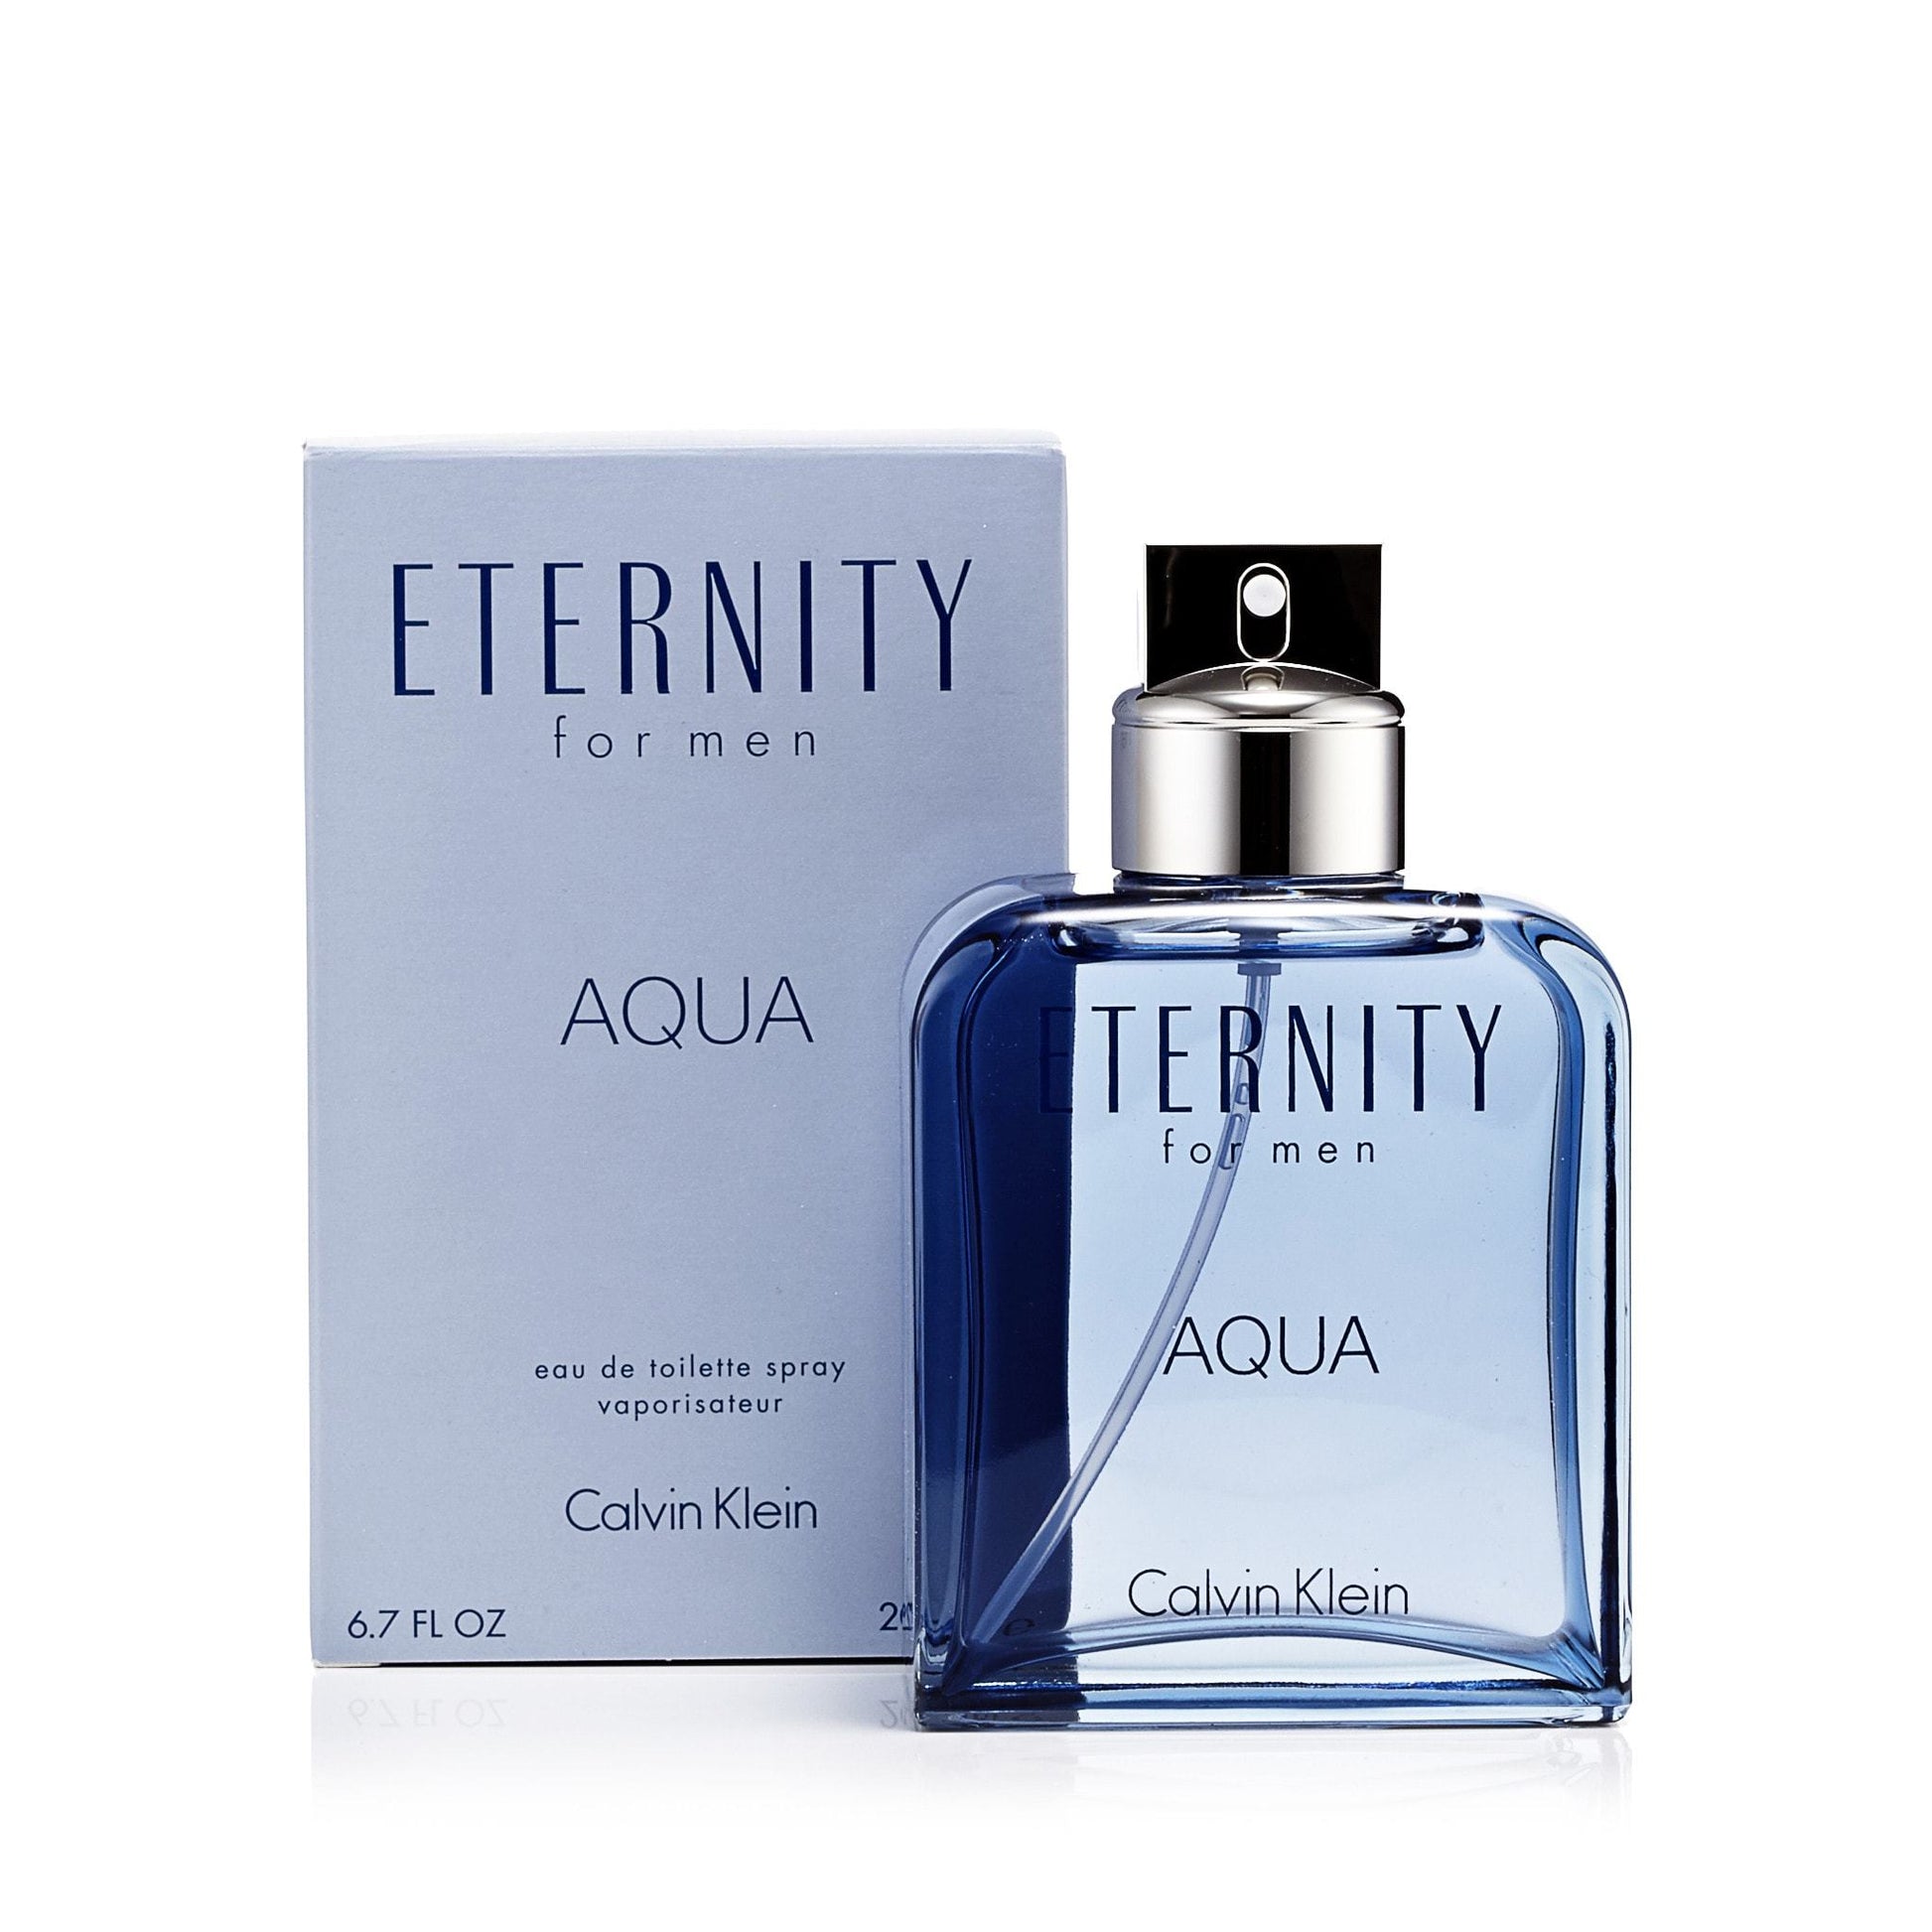 Eternity Aqua Eau de Toilette Spray for Men by Calvin Klein, Product image 1